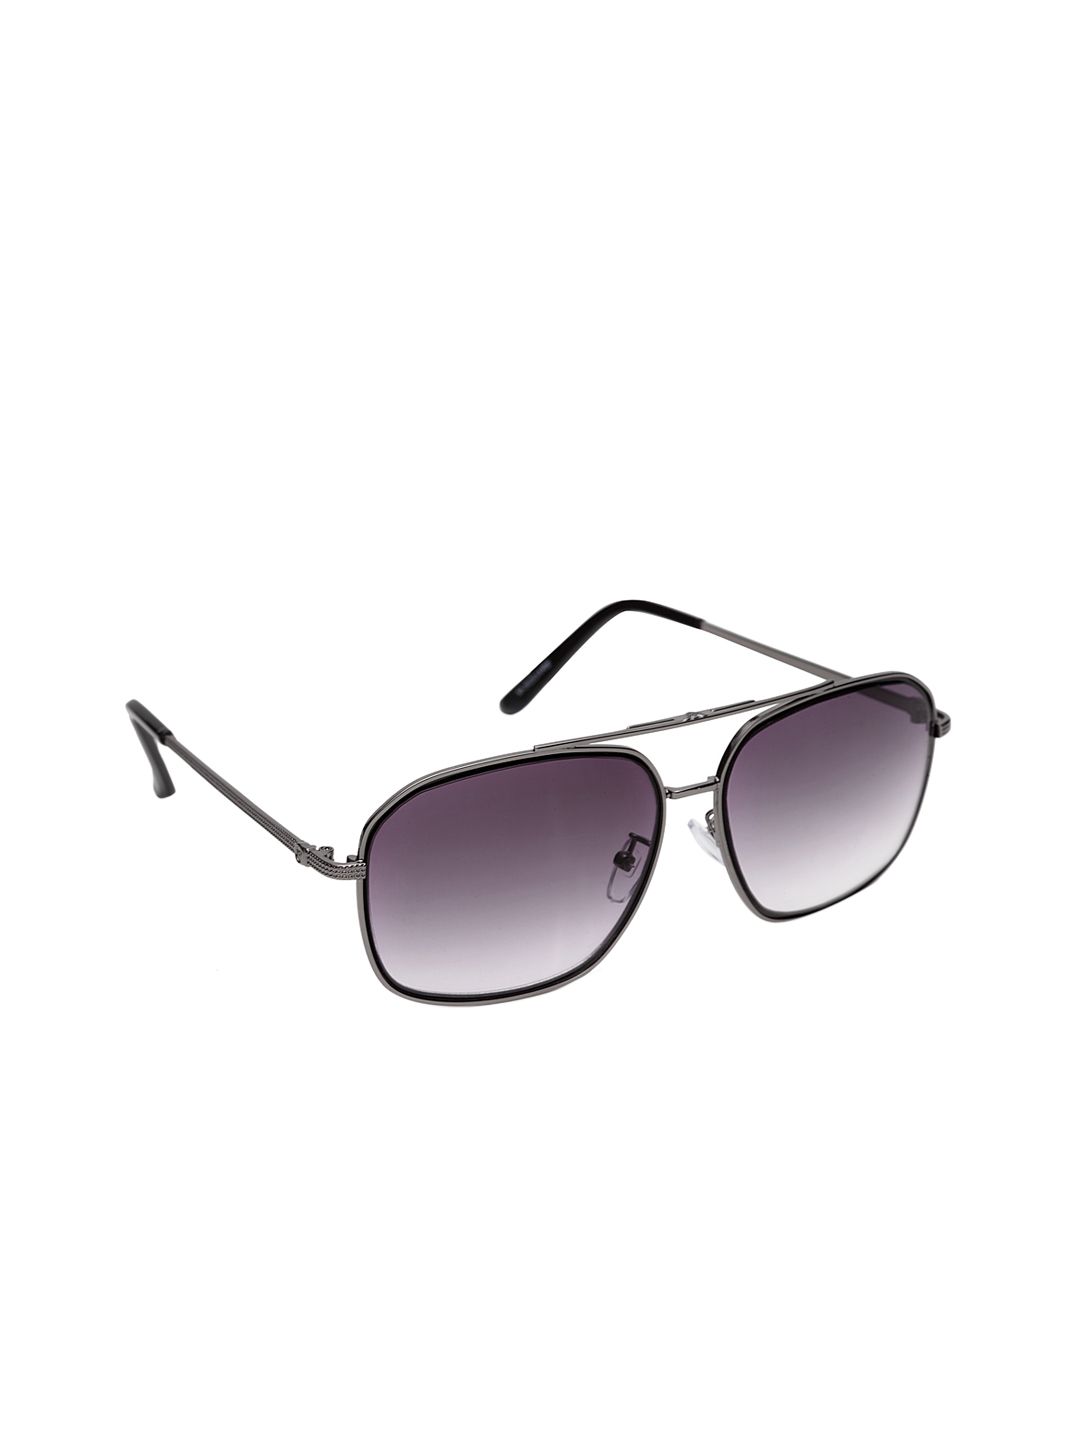 Get Glamr Unisex Square Sunglasses SG-UN-MT-360-18 Price in India